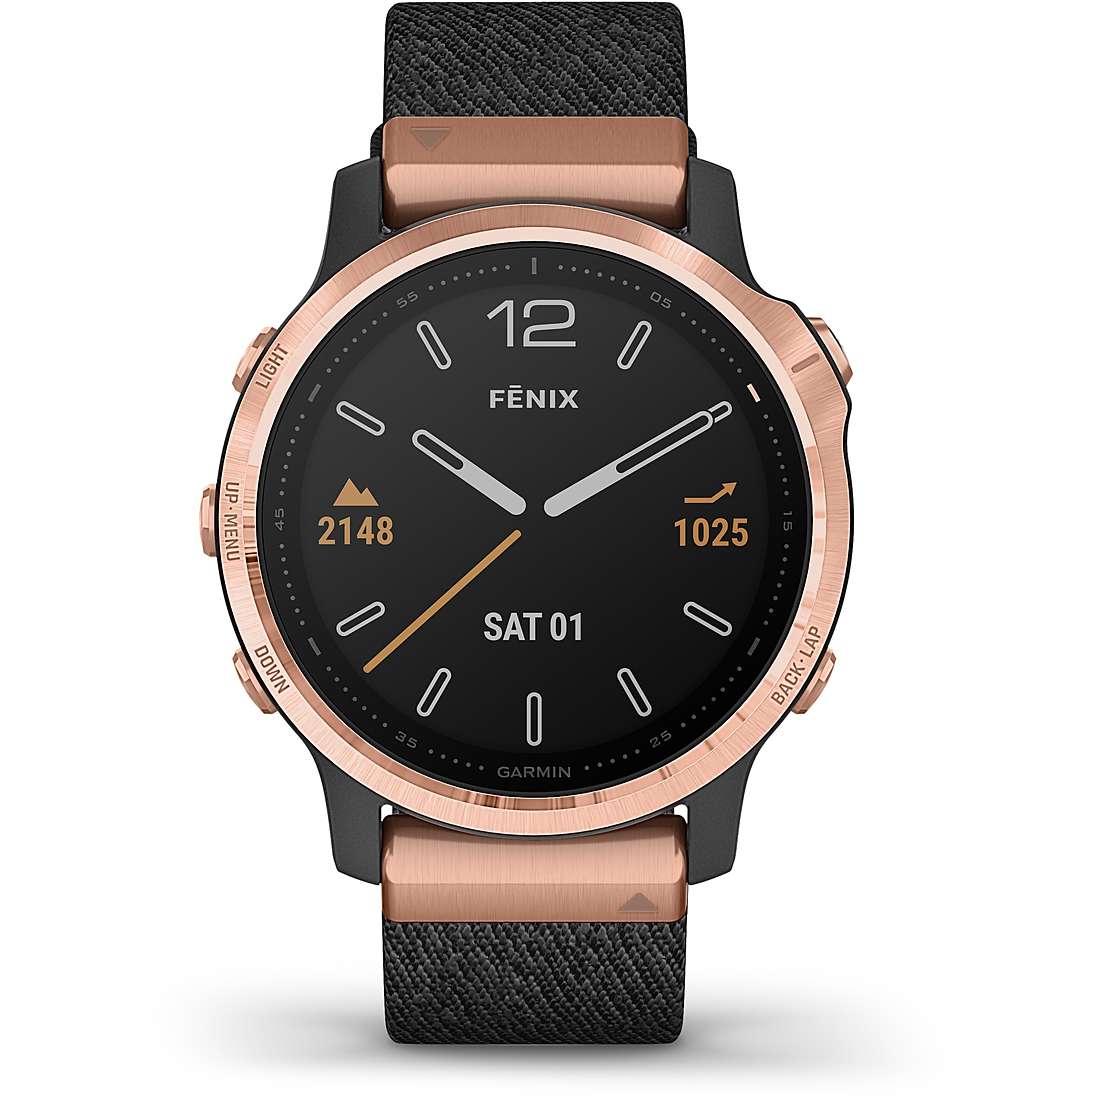 Smartwatch Garmin Fenix orologio uomo 010-02159-37